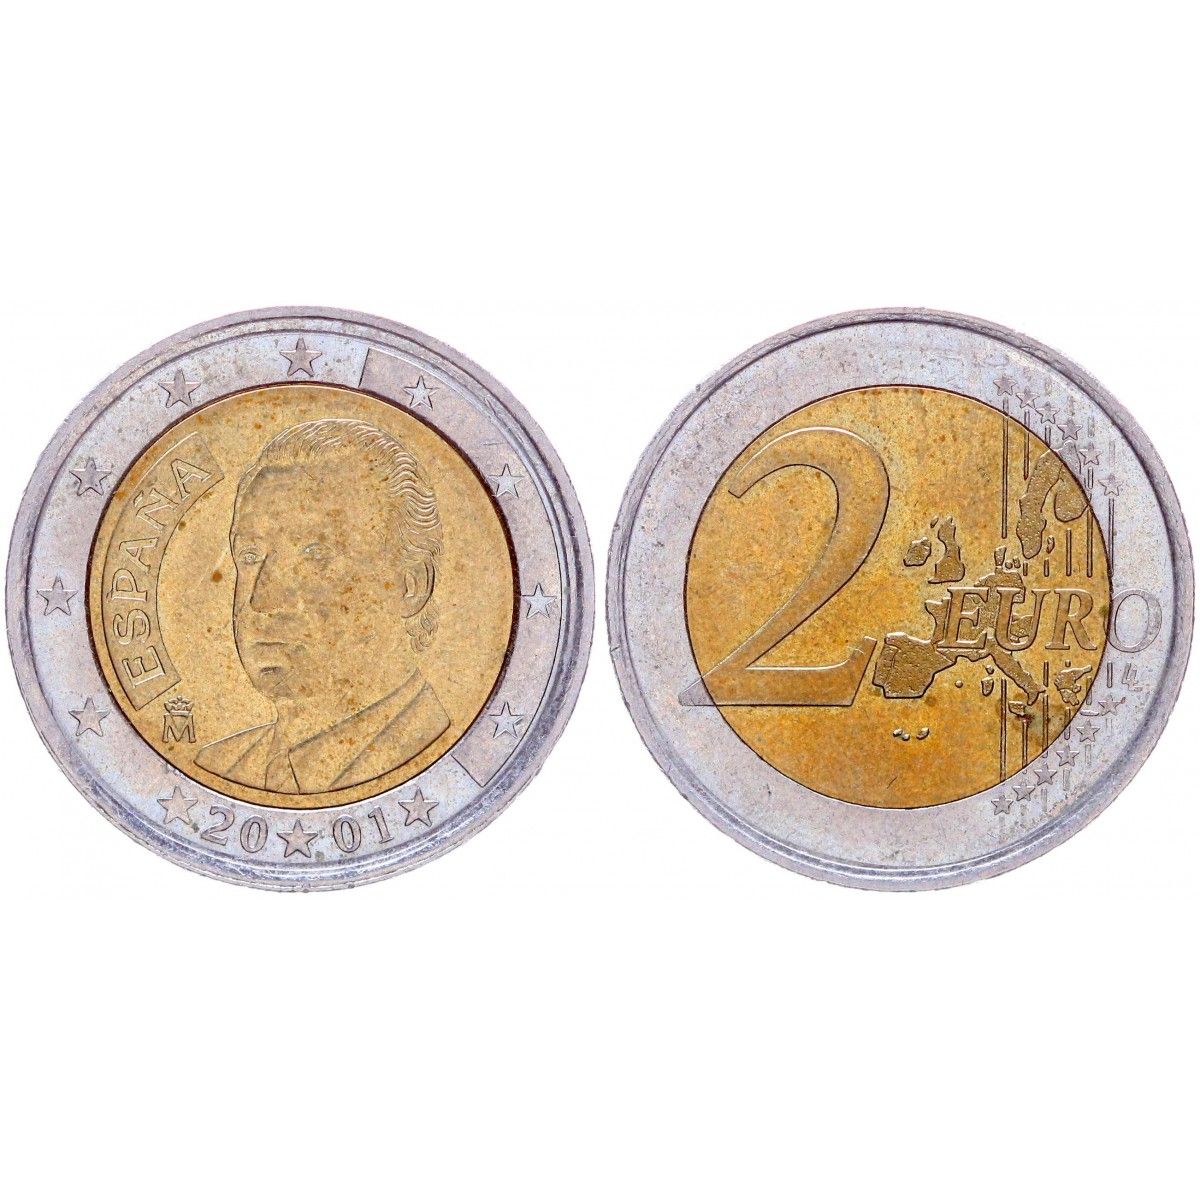 Евро 2001 год. Германия 2 евро 2007 Мекленбург f. Германия 2 евро 2007 набор 5 монет пруфф Мекленбург-передняя Померания.. 2 Евро Кипр 2008. Испания 2 евро, 2009.